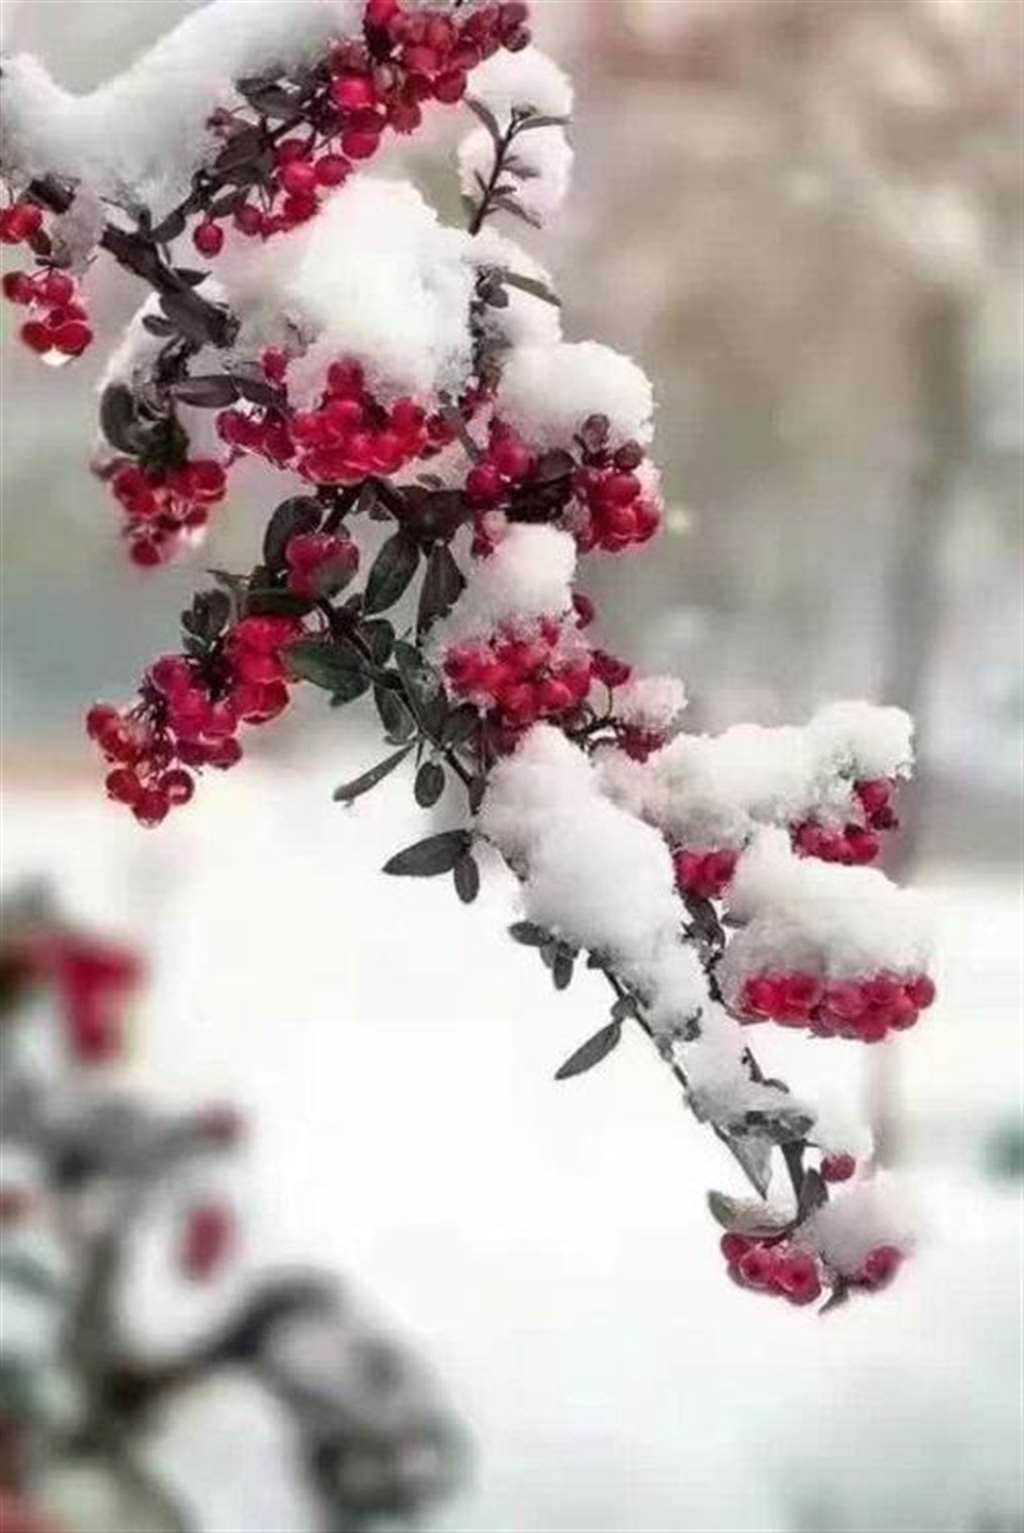 冬天也有好景色,冰雪中的梅花依然娇艳欲滴,发现生活中的美好时光.